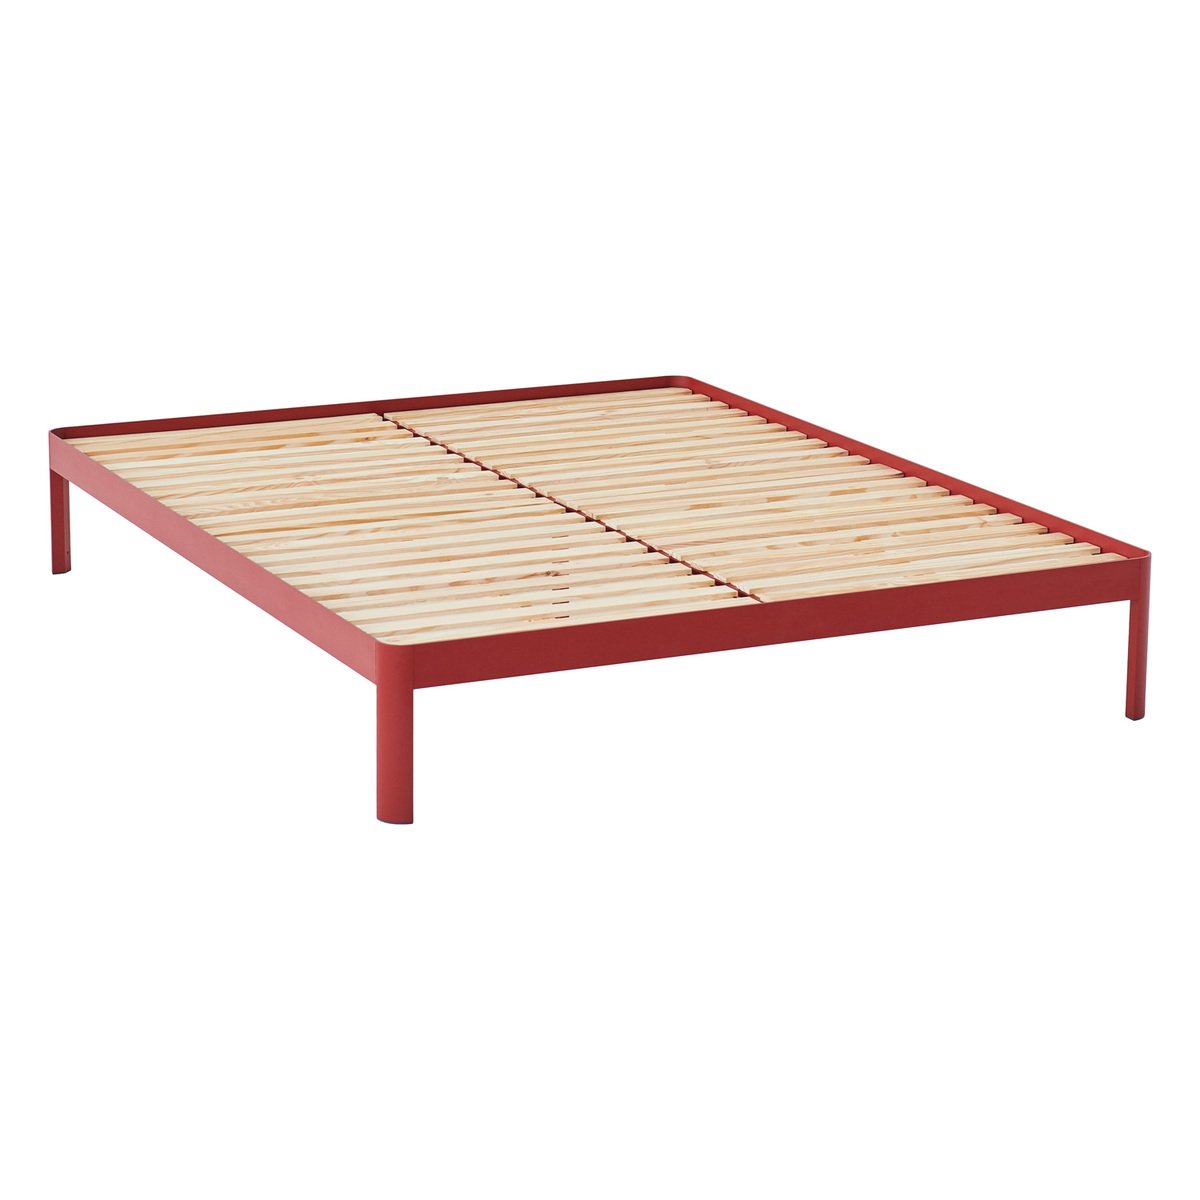 ReFramed Bed frame with slats, deep red | Finnish Design Shop UK